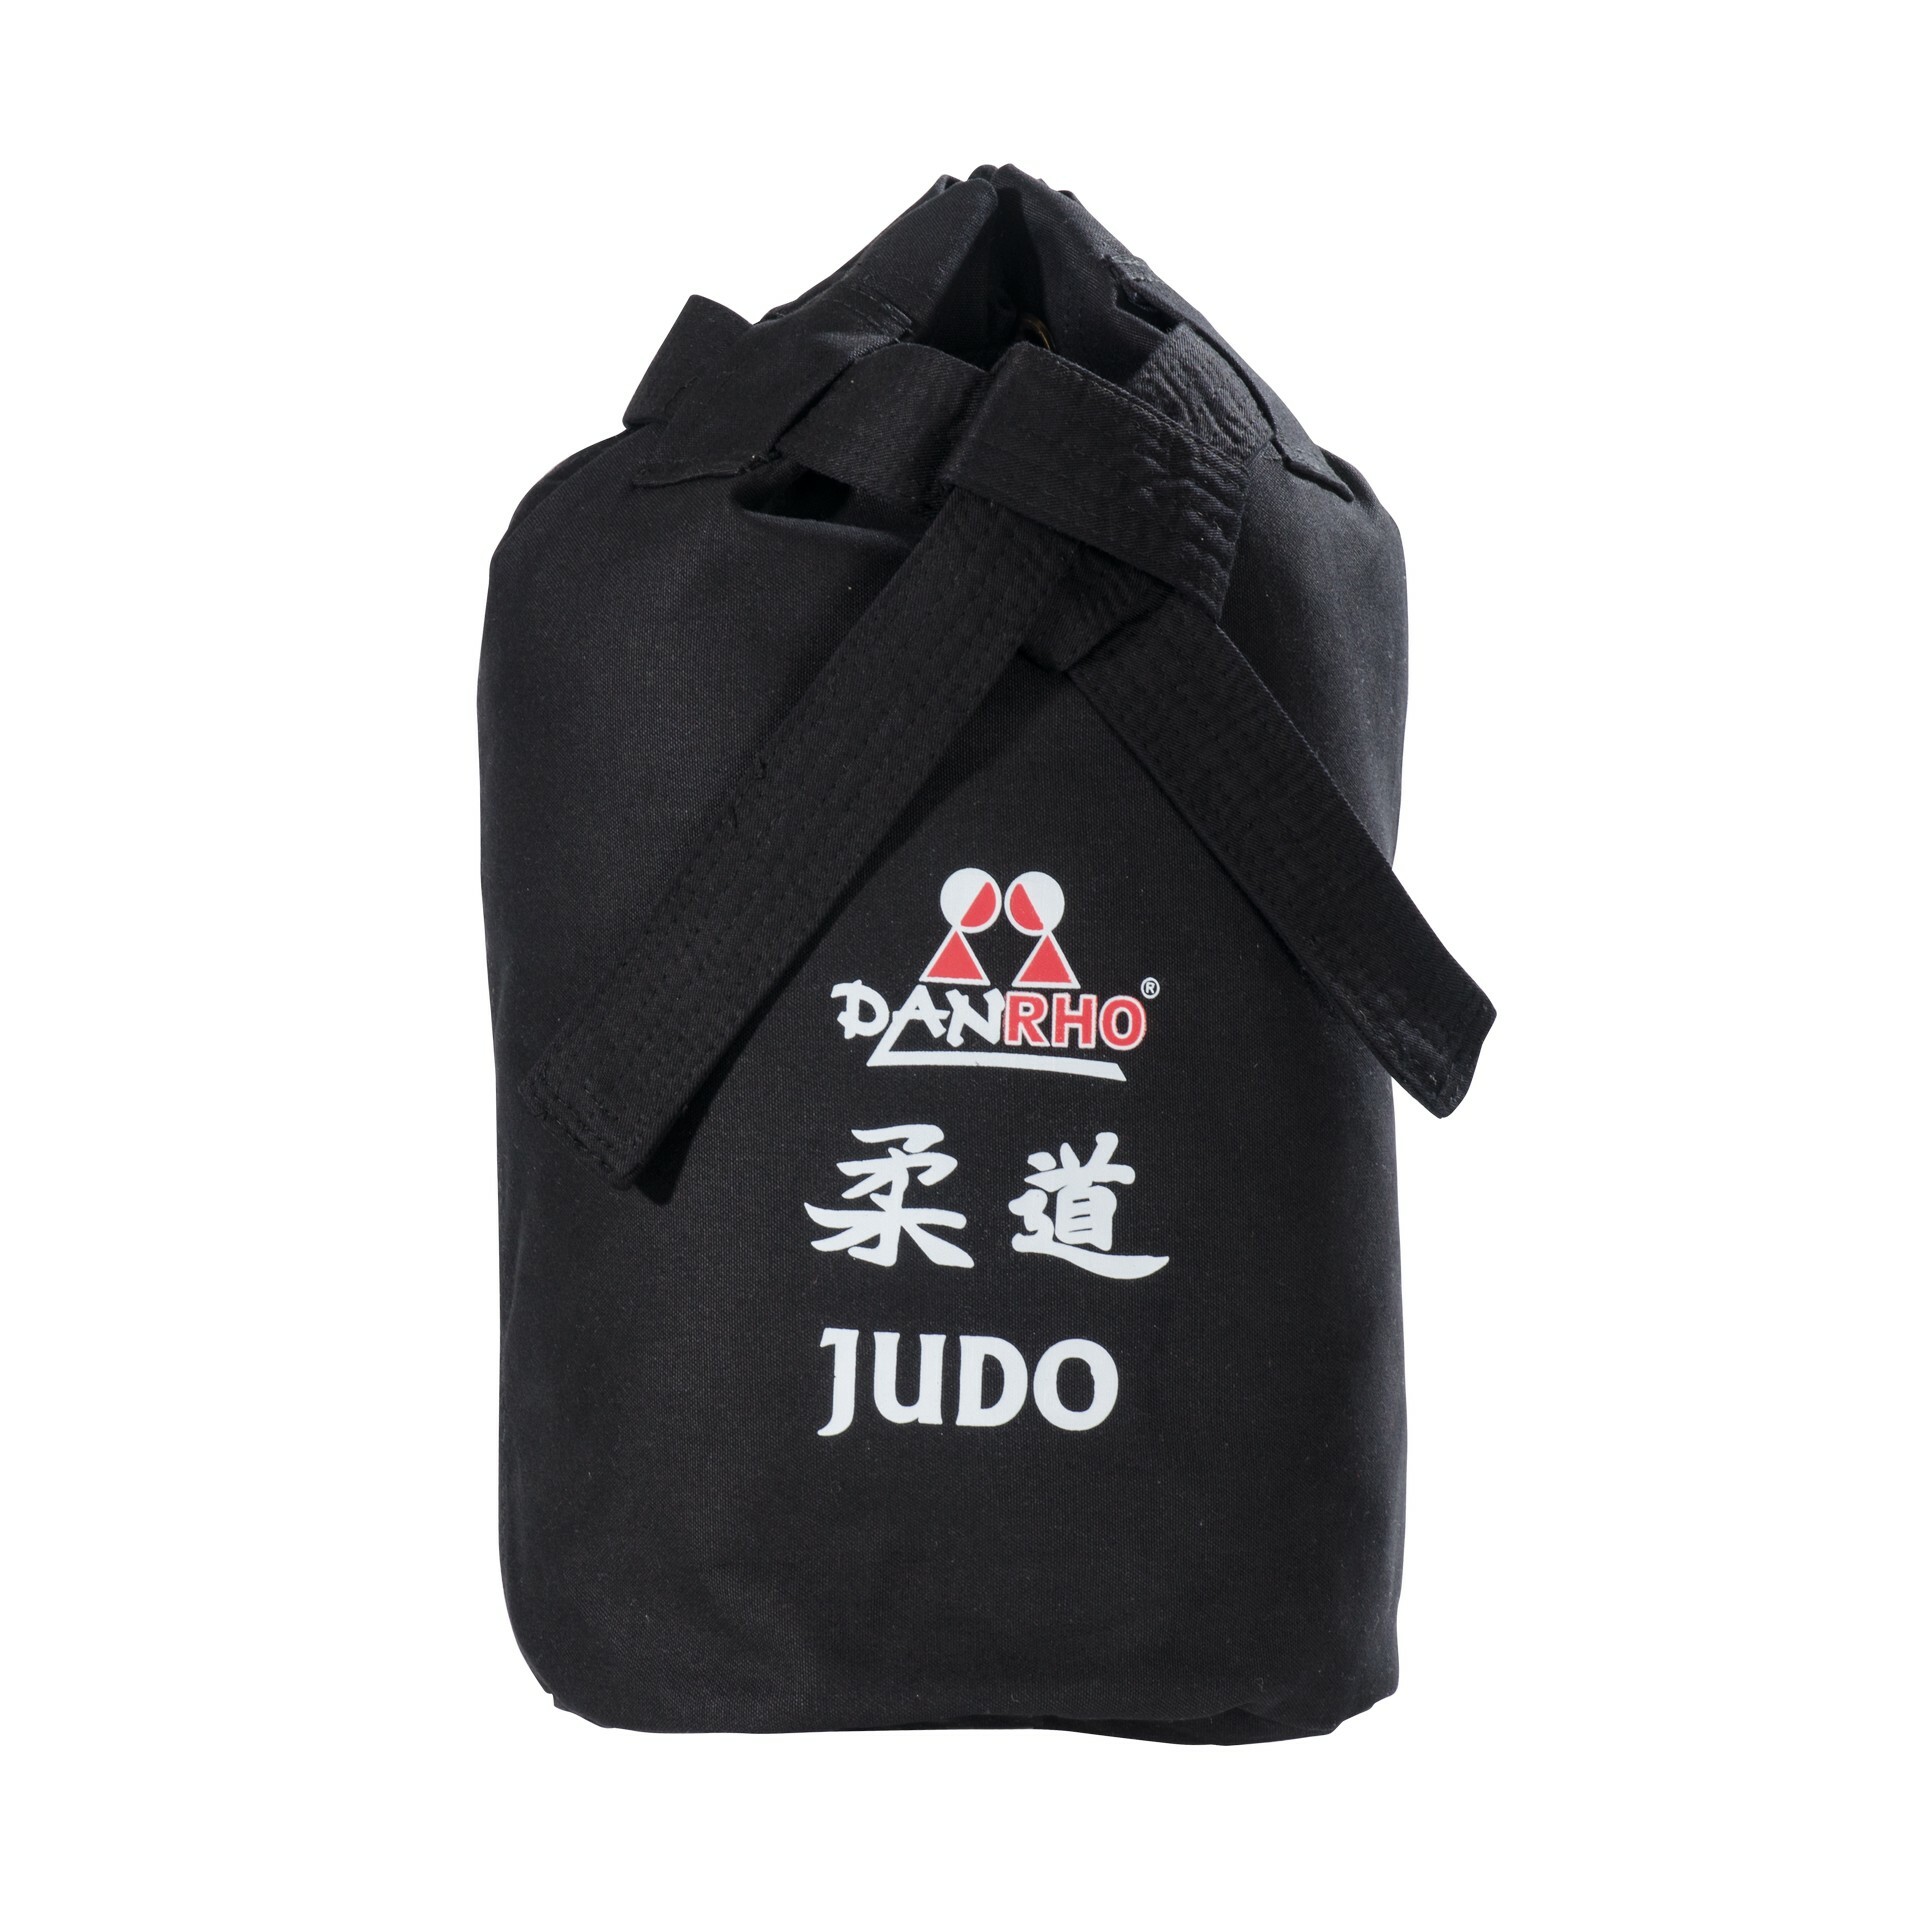 Sac en toile Judo Danrho Dojo Line